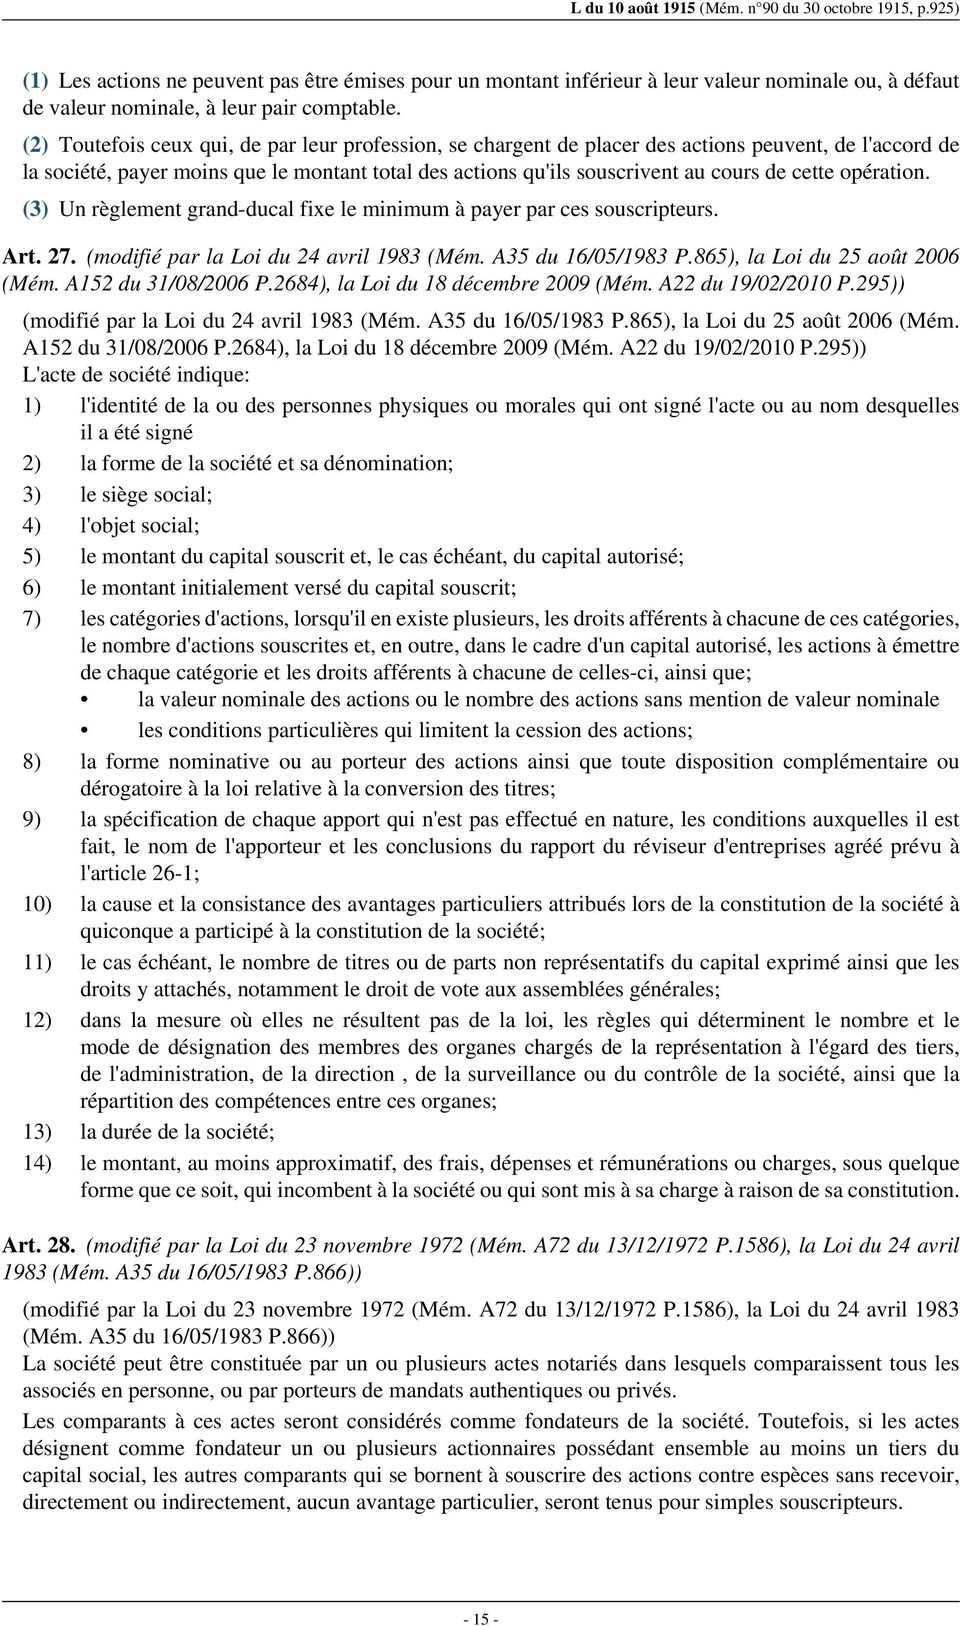 opération. (3) Un règlement grand-ducal fixe le minimum à payer par ces souscripteurs. Art. 27. (modifié par la Loi du 24 avril 1983 (Mém. A35 du 16/05/1983 P.865), la Loi du 25 août 2006 (Mém.